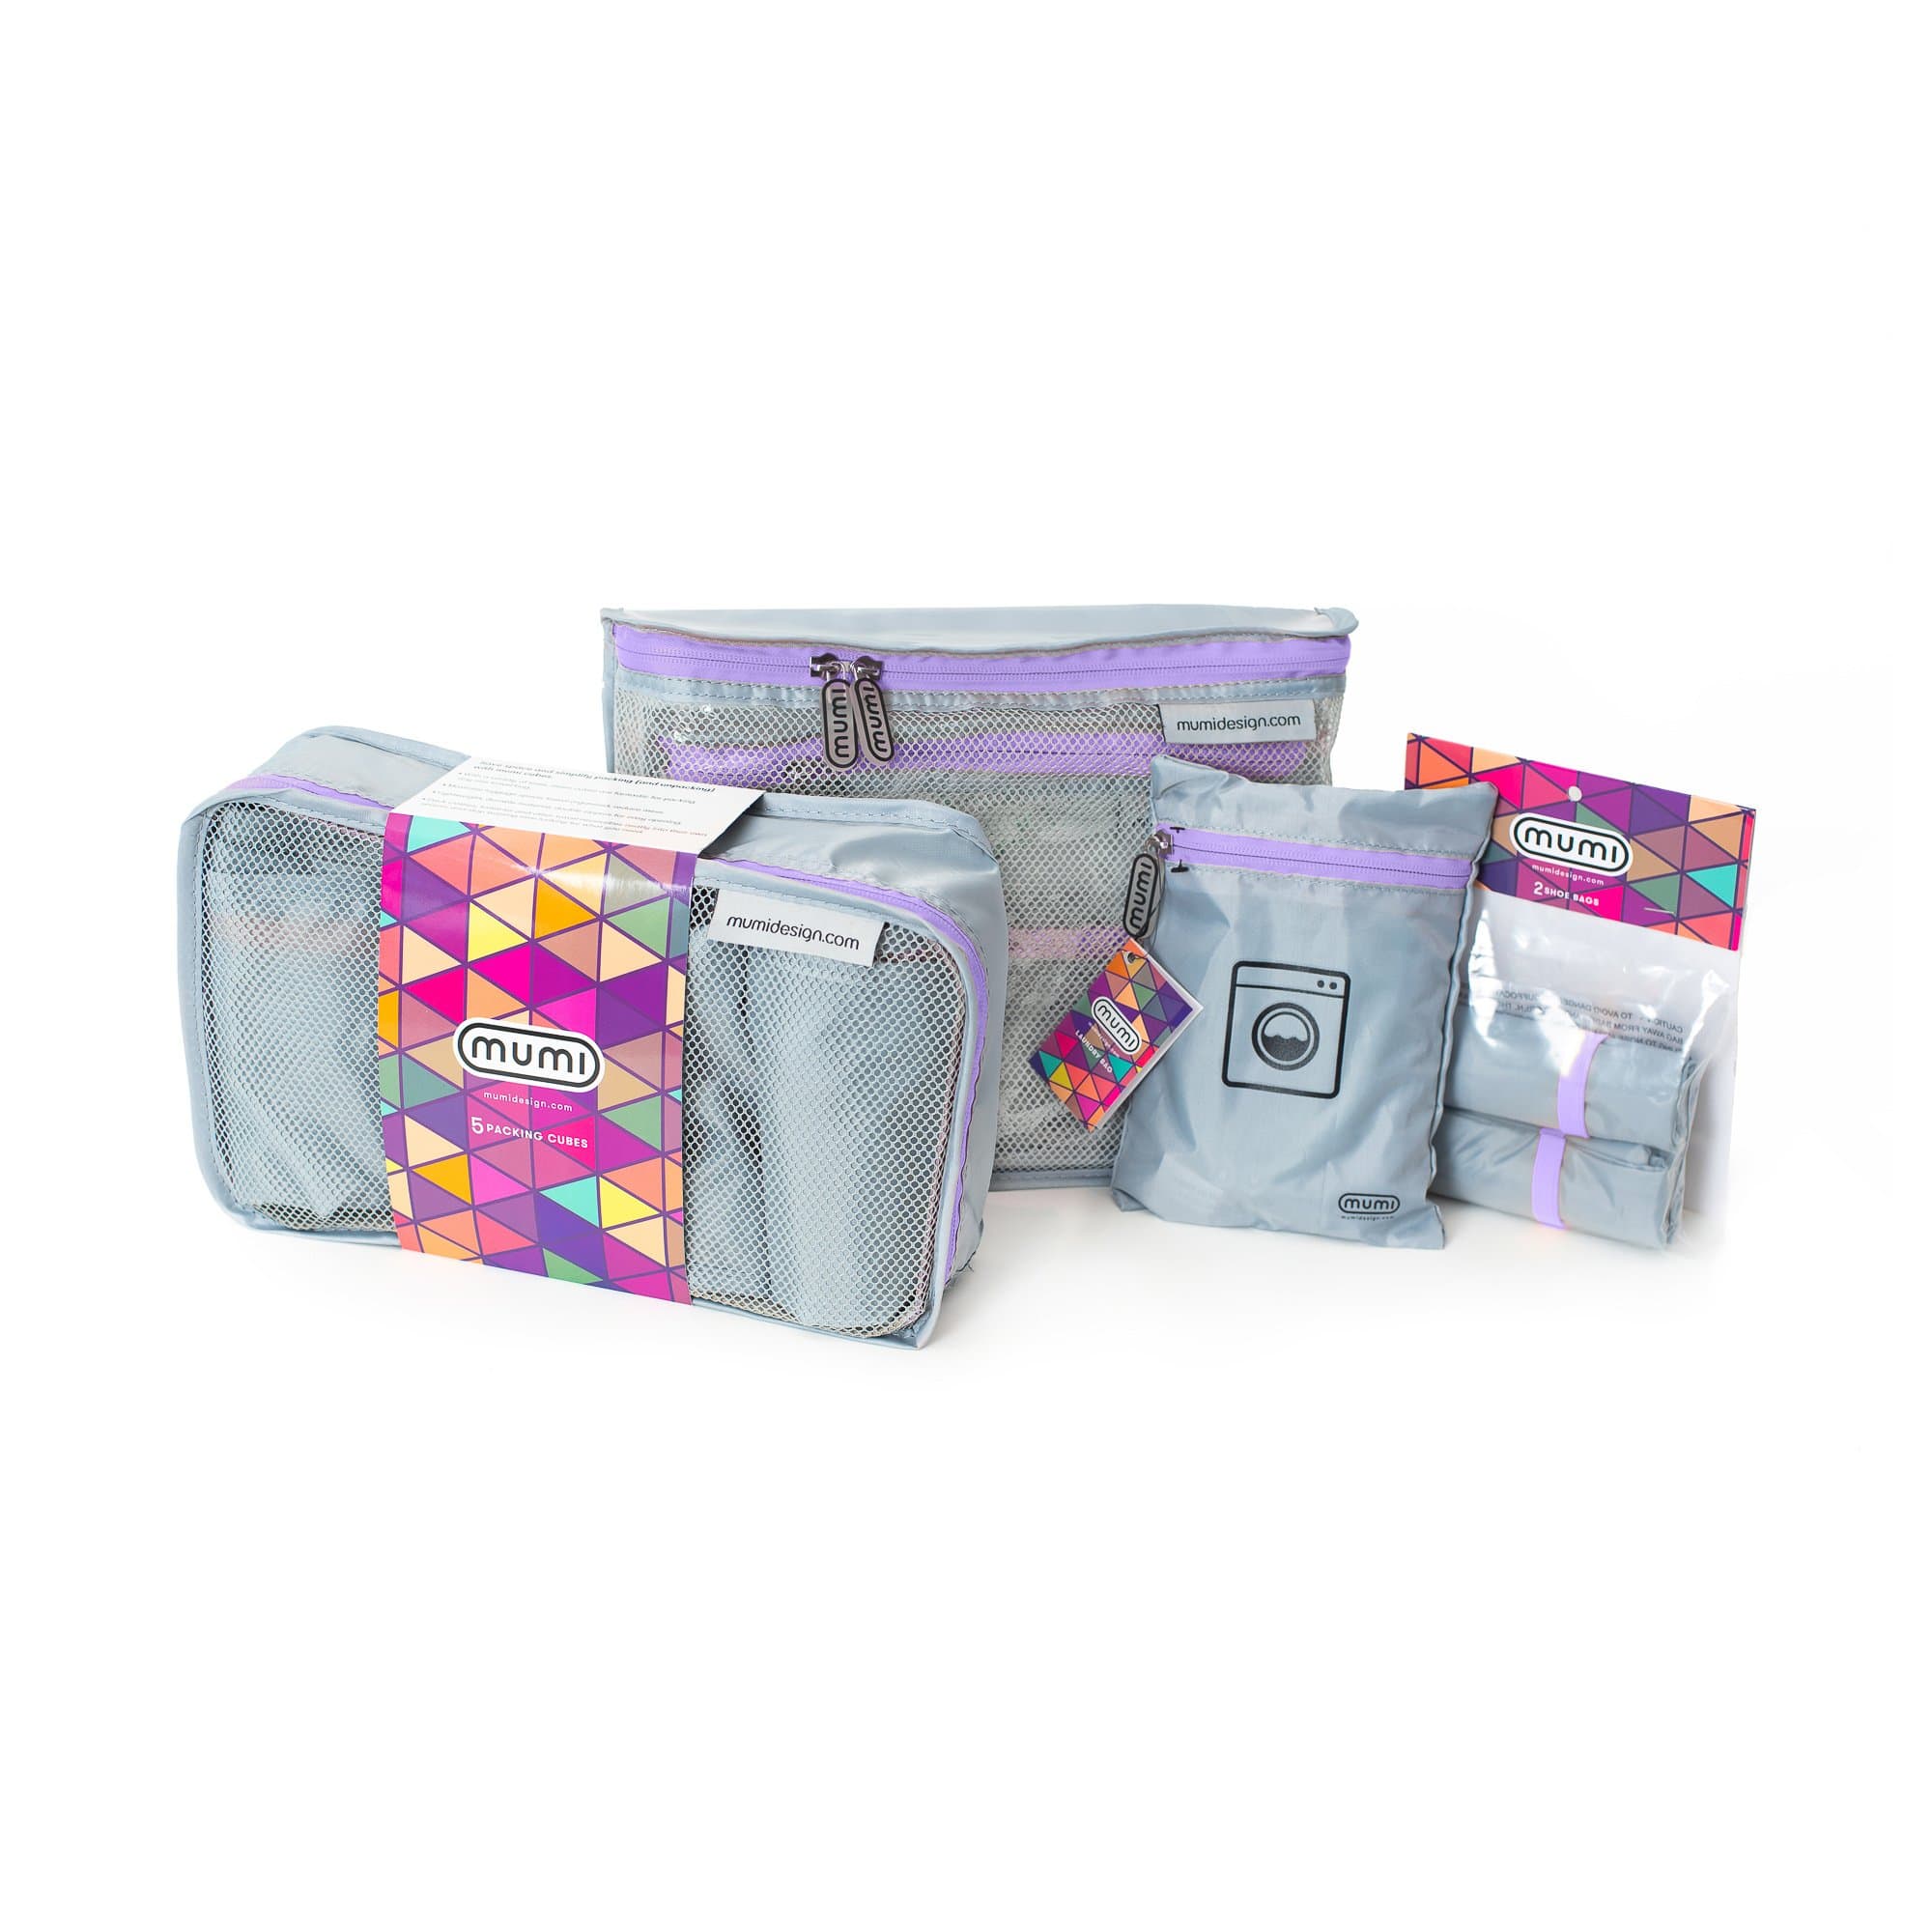 mumi Bundles pink ultimate packing bundle